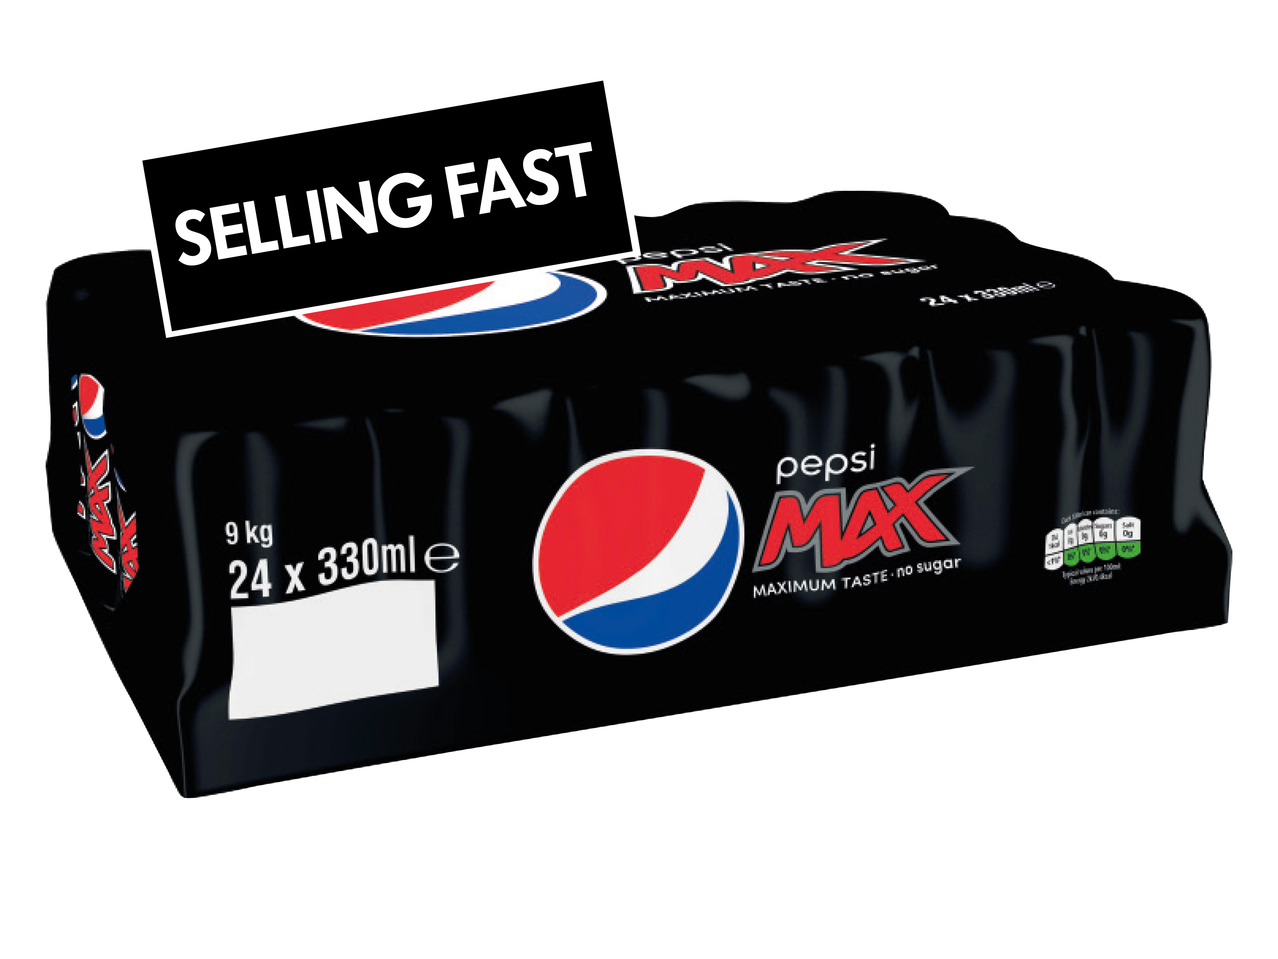 Pepsi Max or Diet1